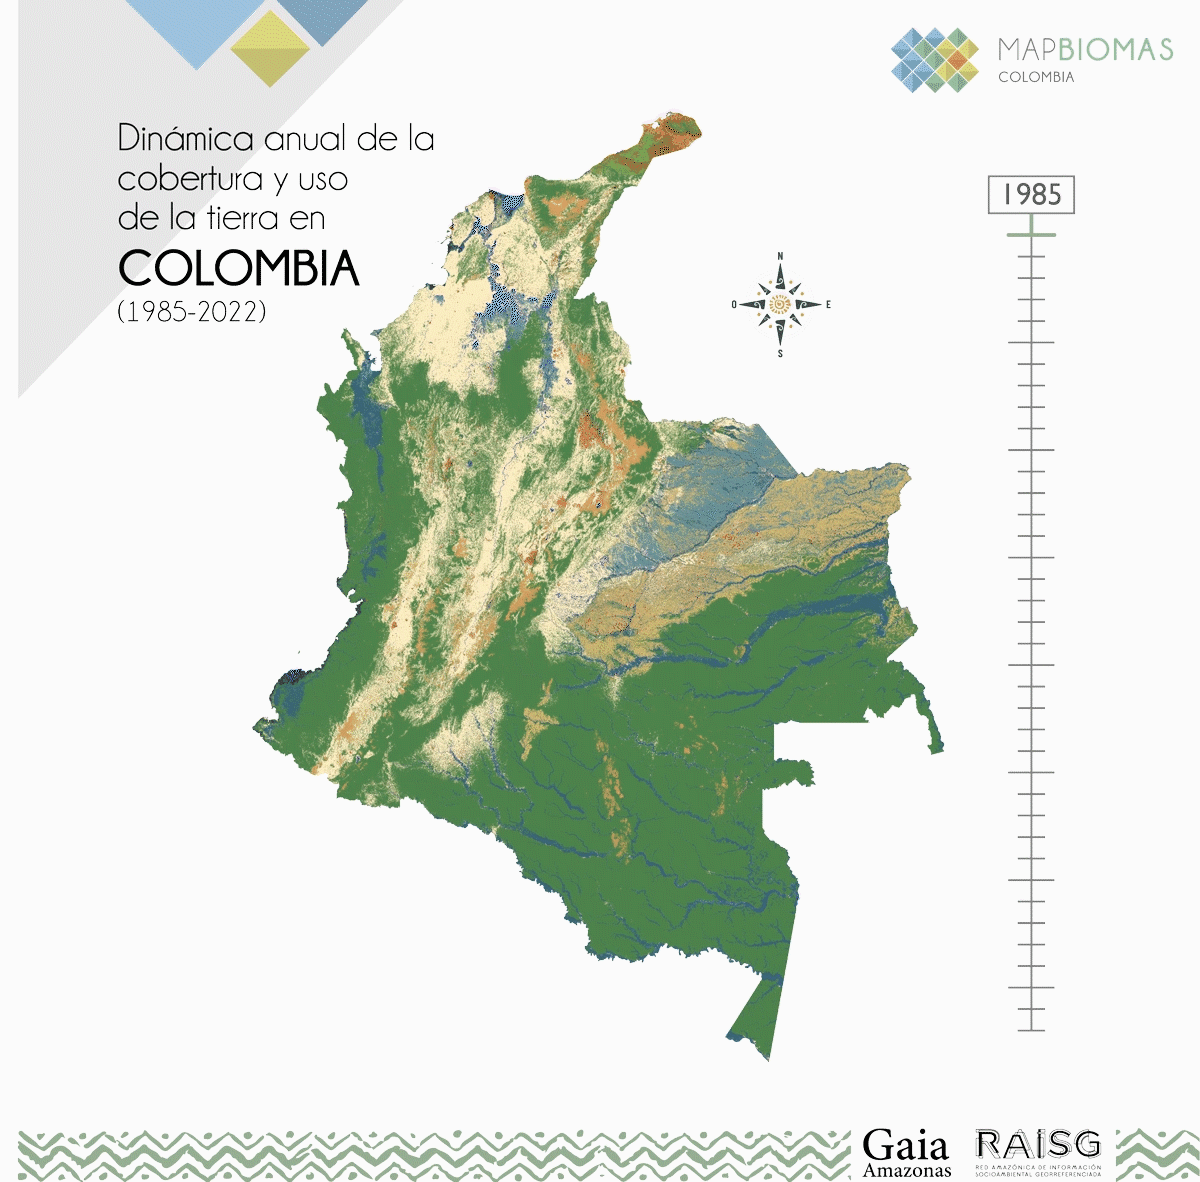 Dinámicas año a año de la cobertura y uso del suelo en Colombia.